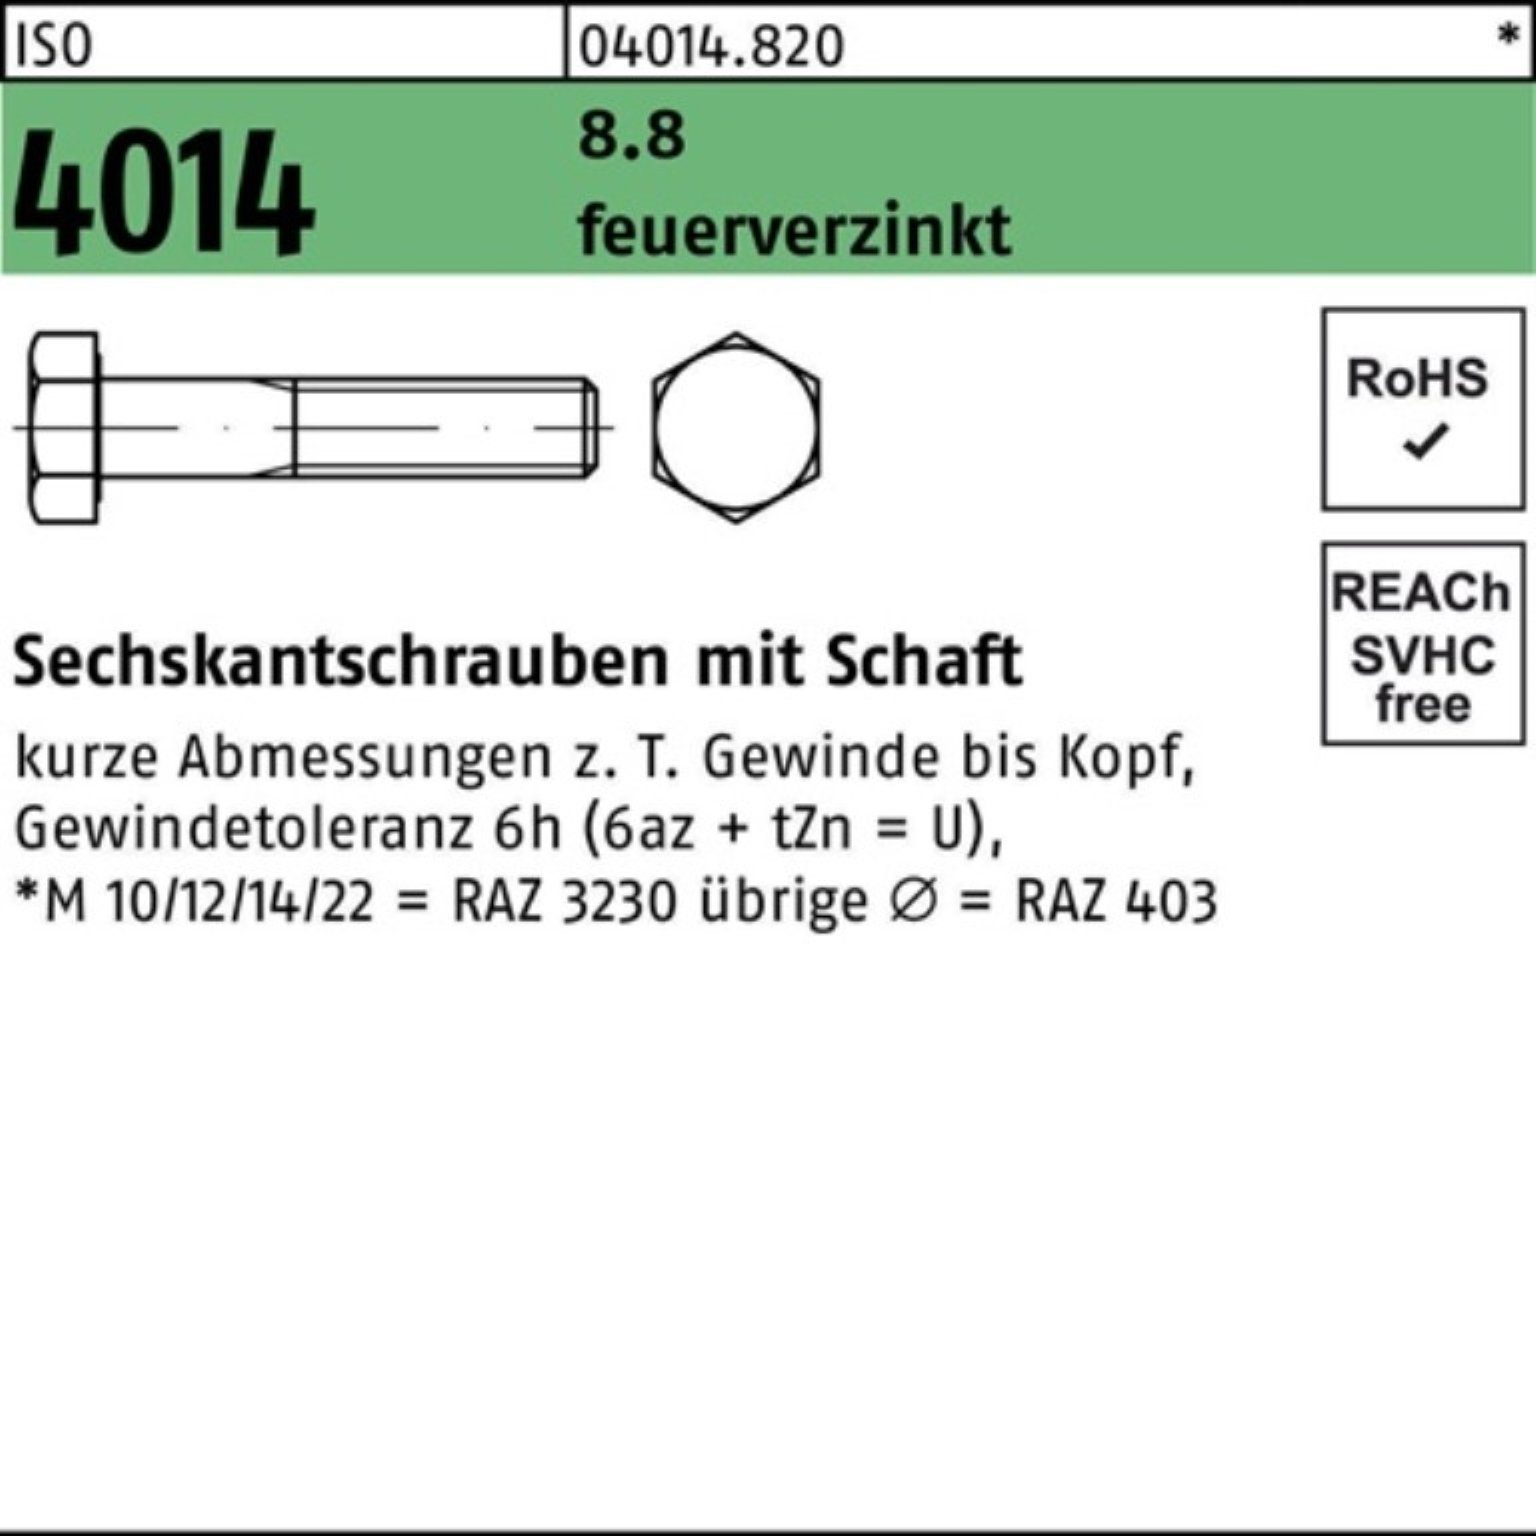 Bufab Pack 4014 Sechskantschraube 2 Schaft M16x ISO Sechskantschraube 110 feuerverz. 8.8 100er